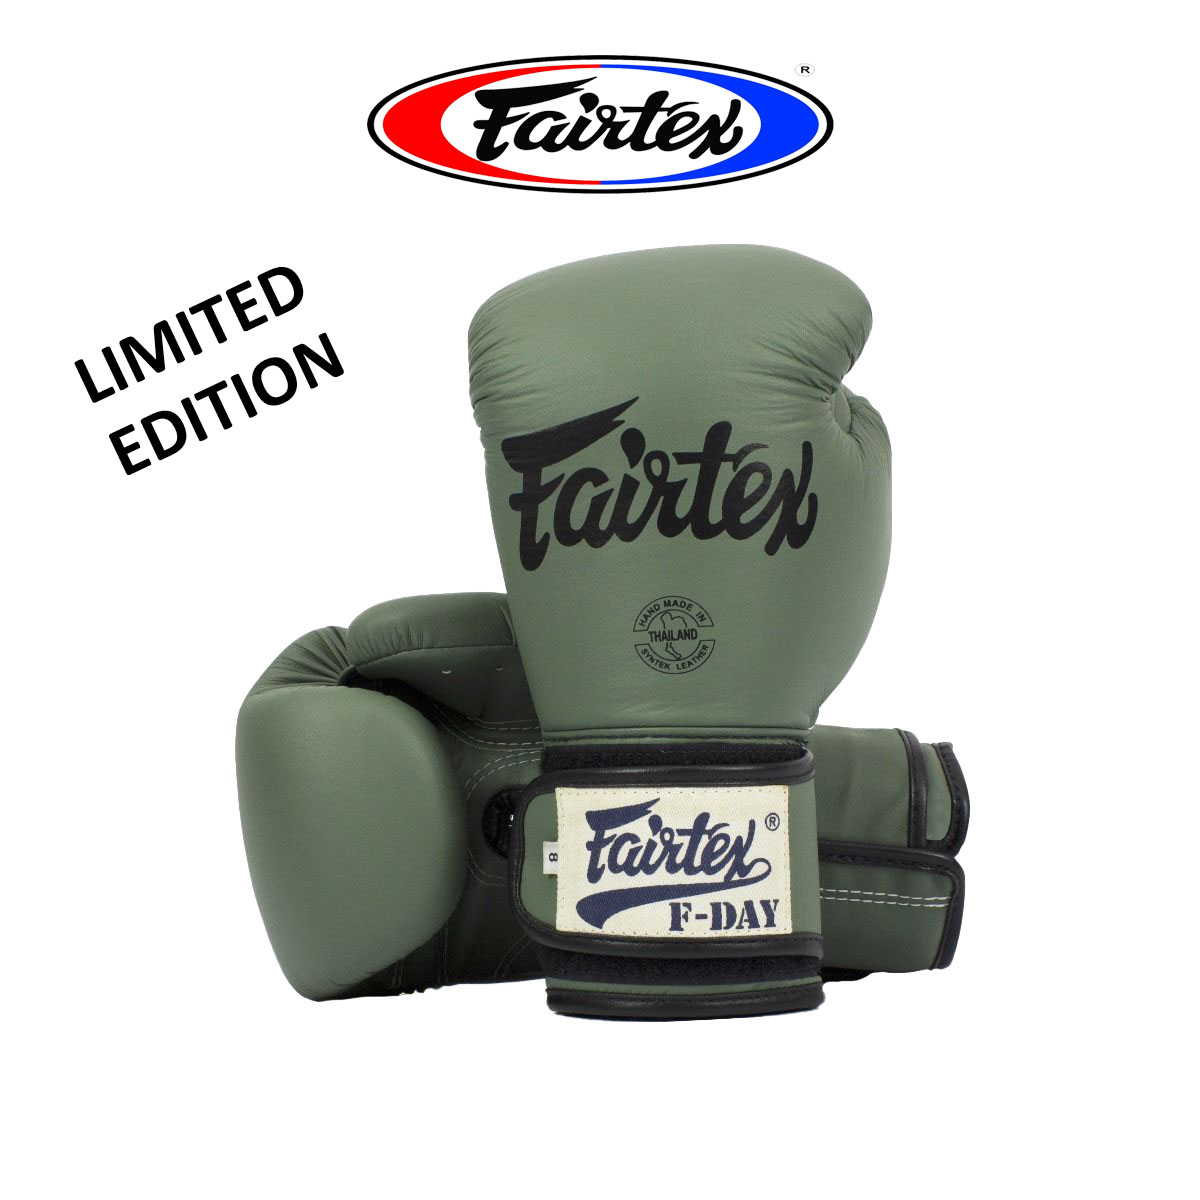 นวมชกมวย Fairtex Boxing Gloves BGV11 F Day Military Green Limited Edition มาพร้อมกับ สร้อย Fairtex  กล่อง F day สีเขียว 